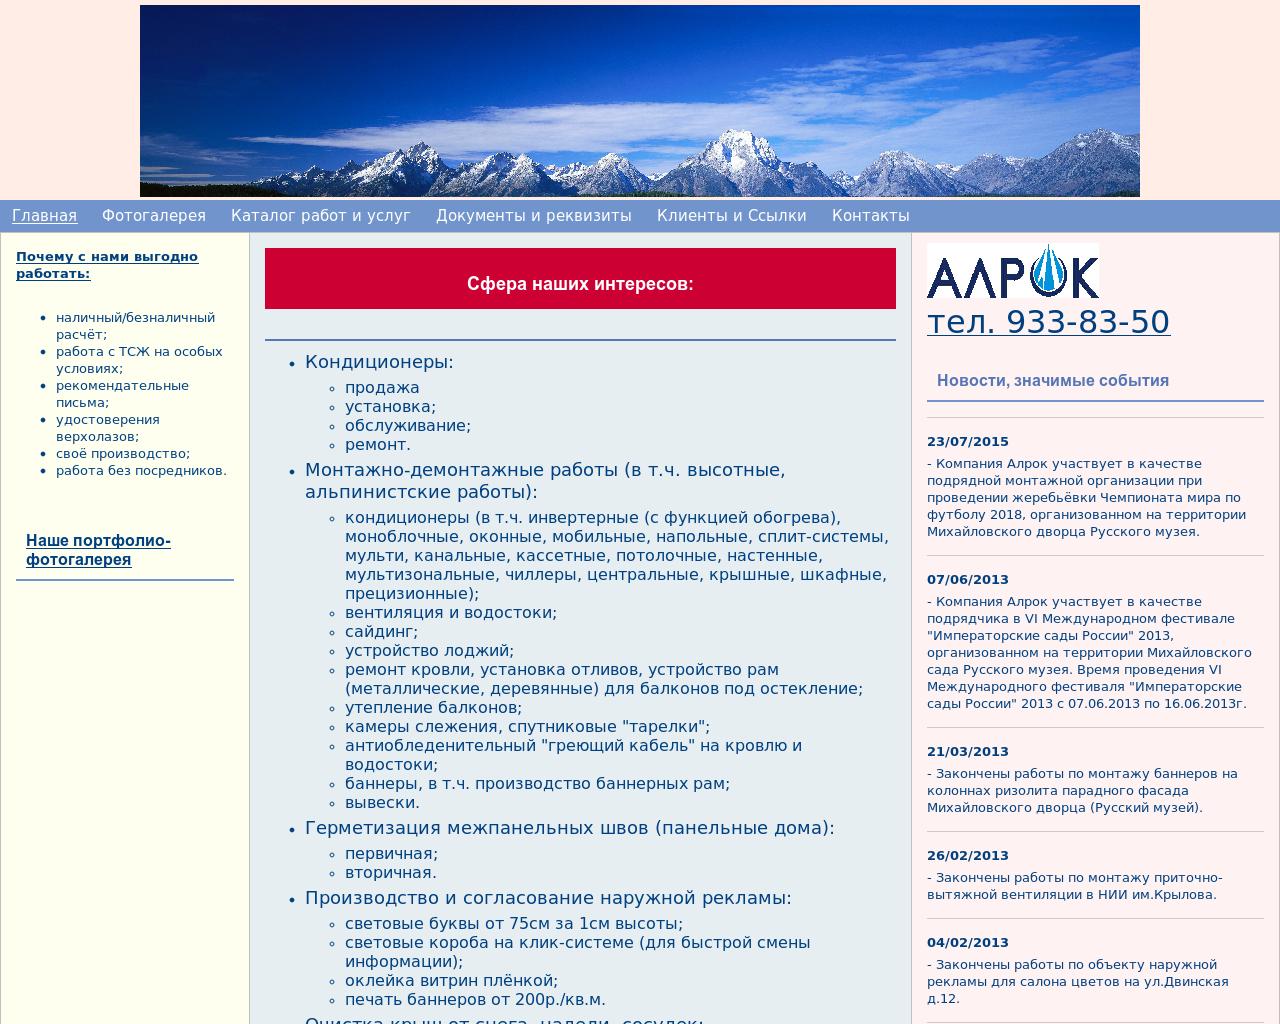 Изображение сайта alrok.ru в разрешении 1280x1024